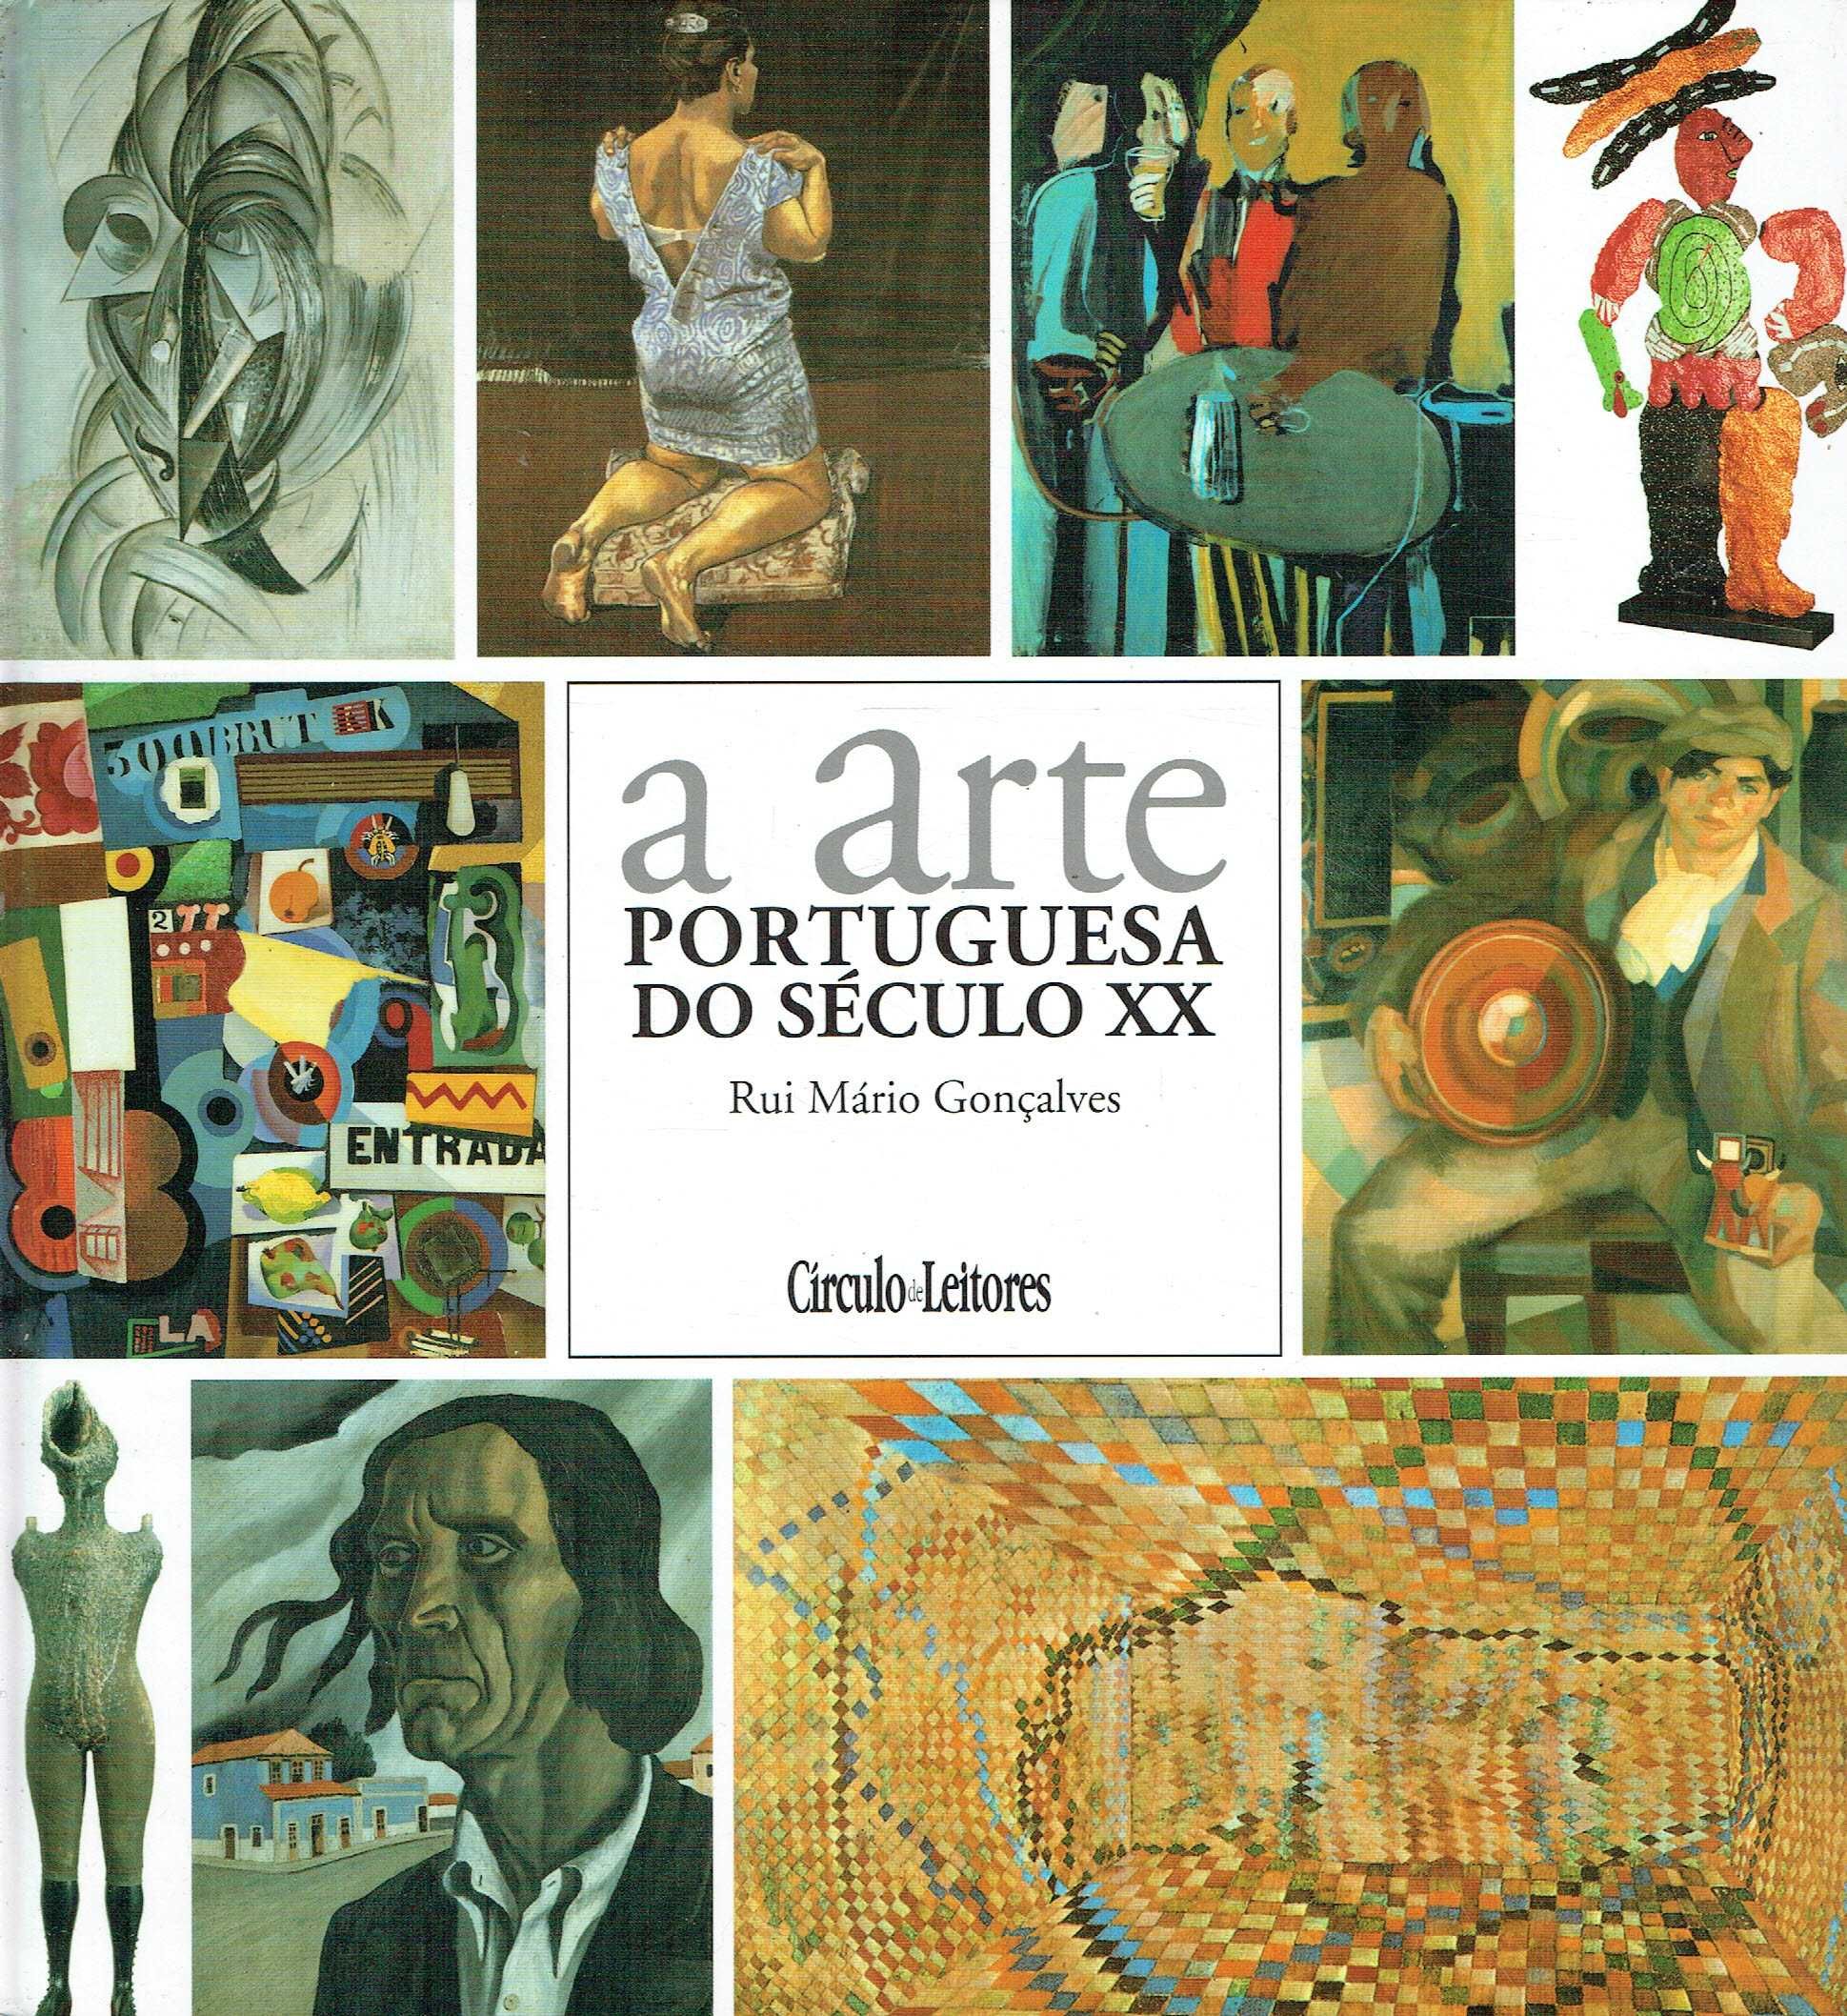 15390

A Arte Portuguesa do Século XX
Rui Mário Gonçalves